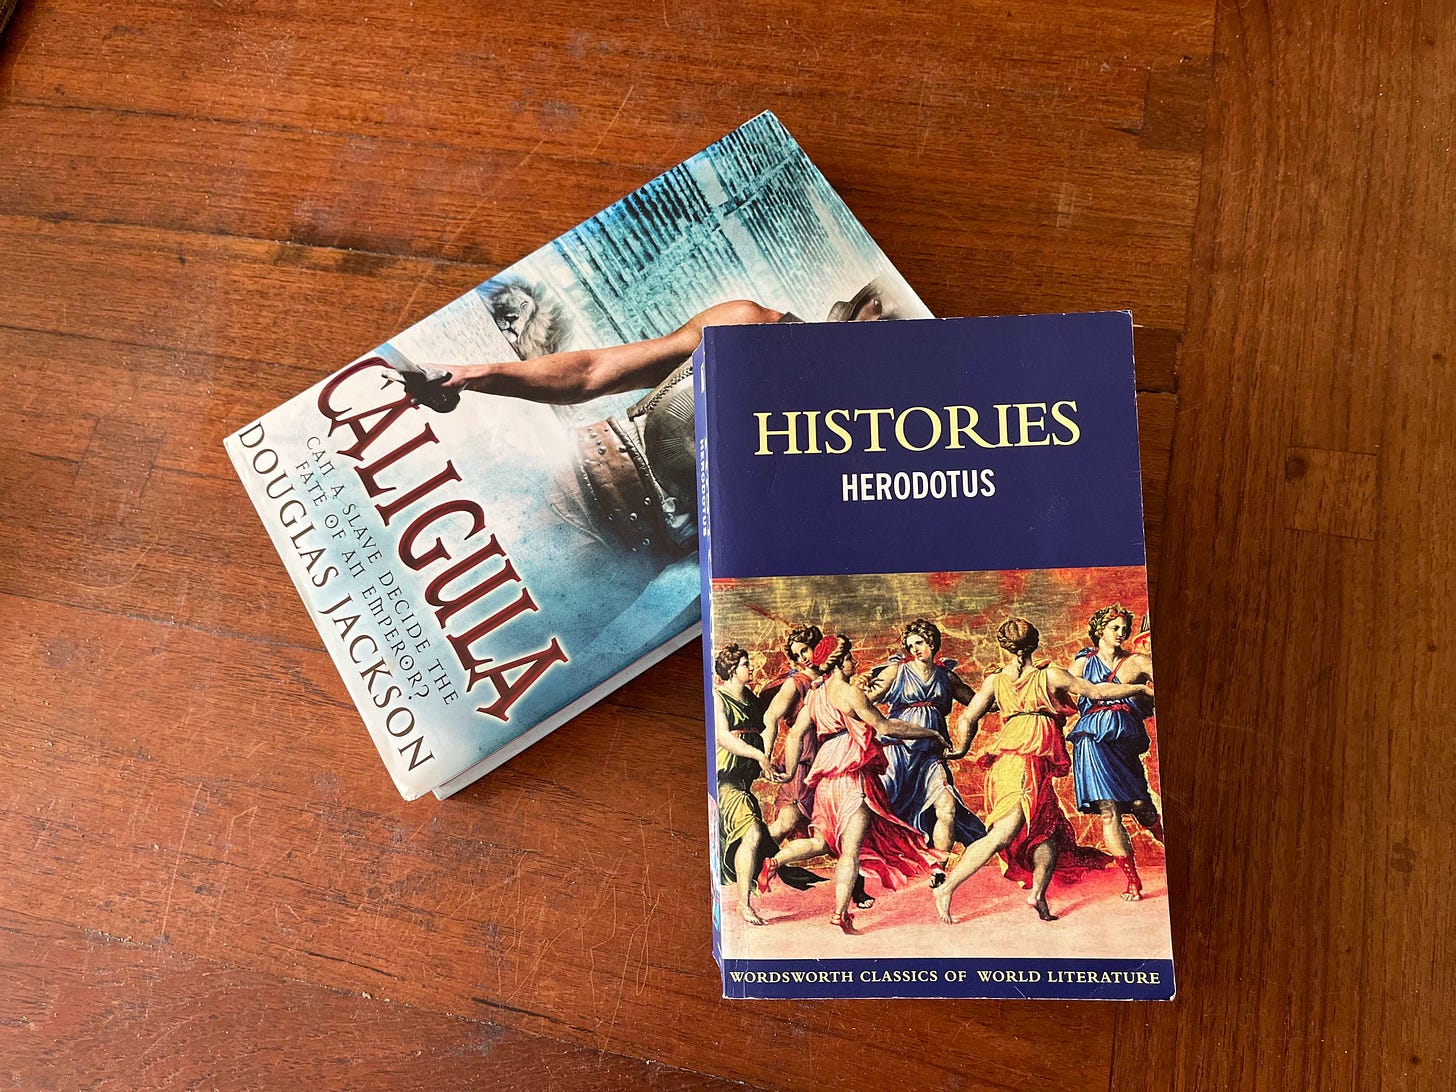 Herodotus inspires author